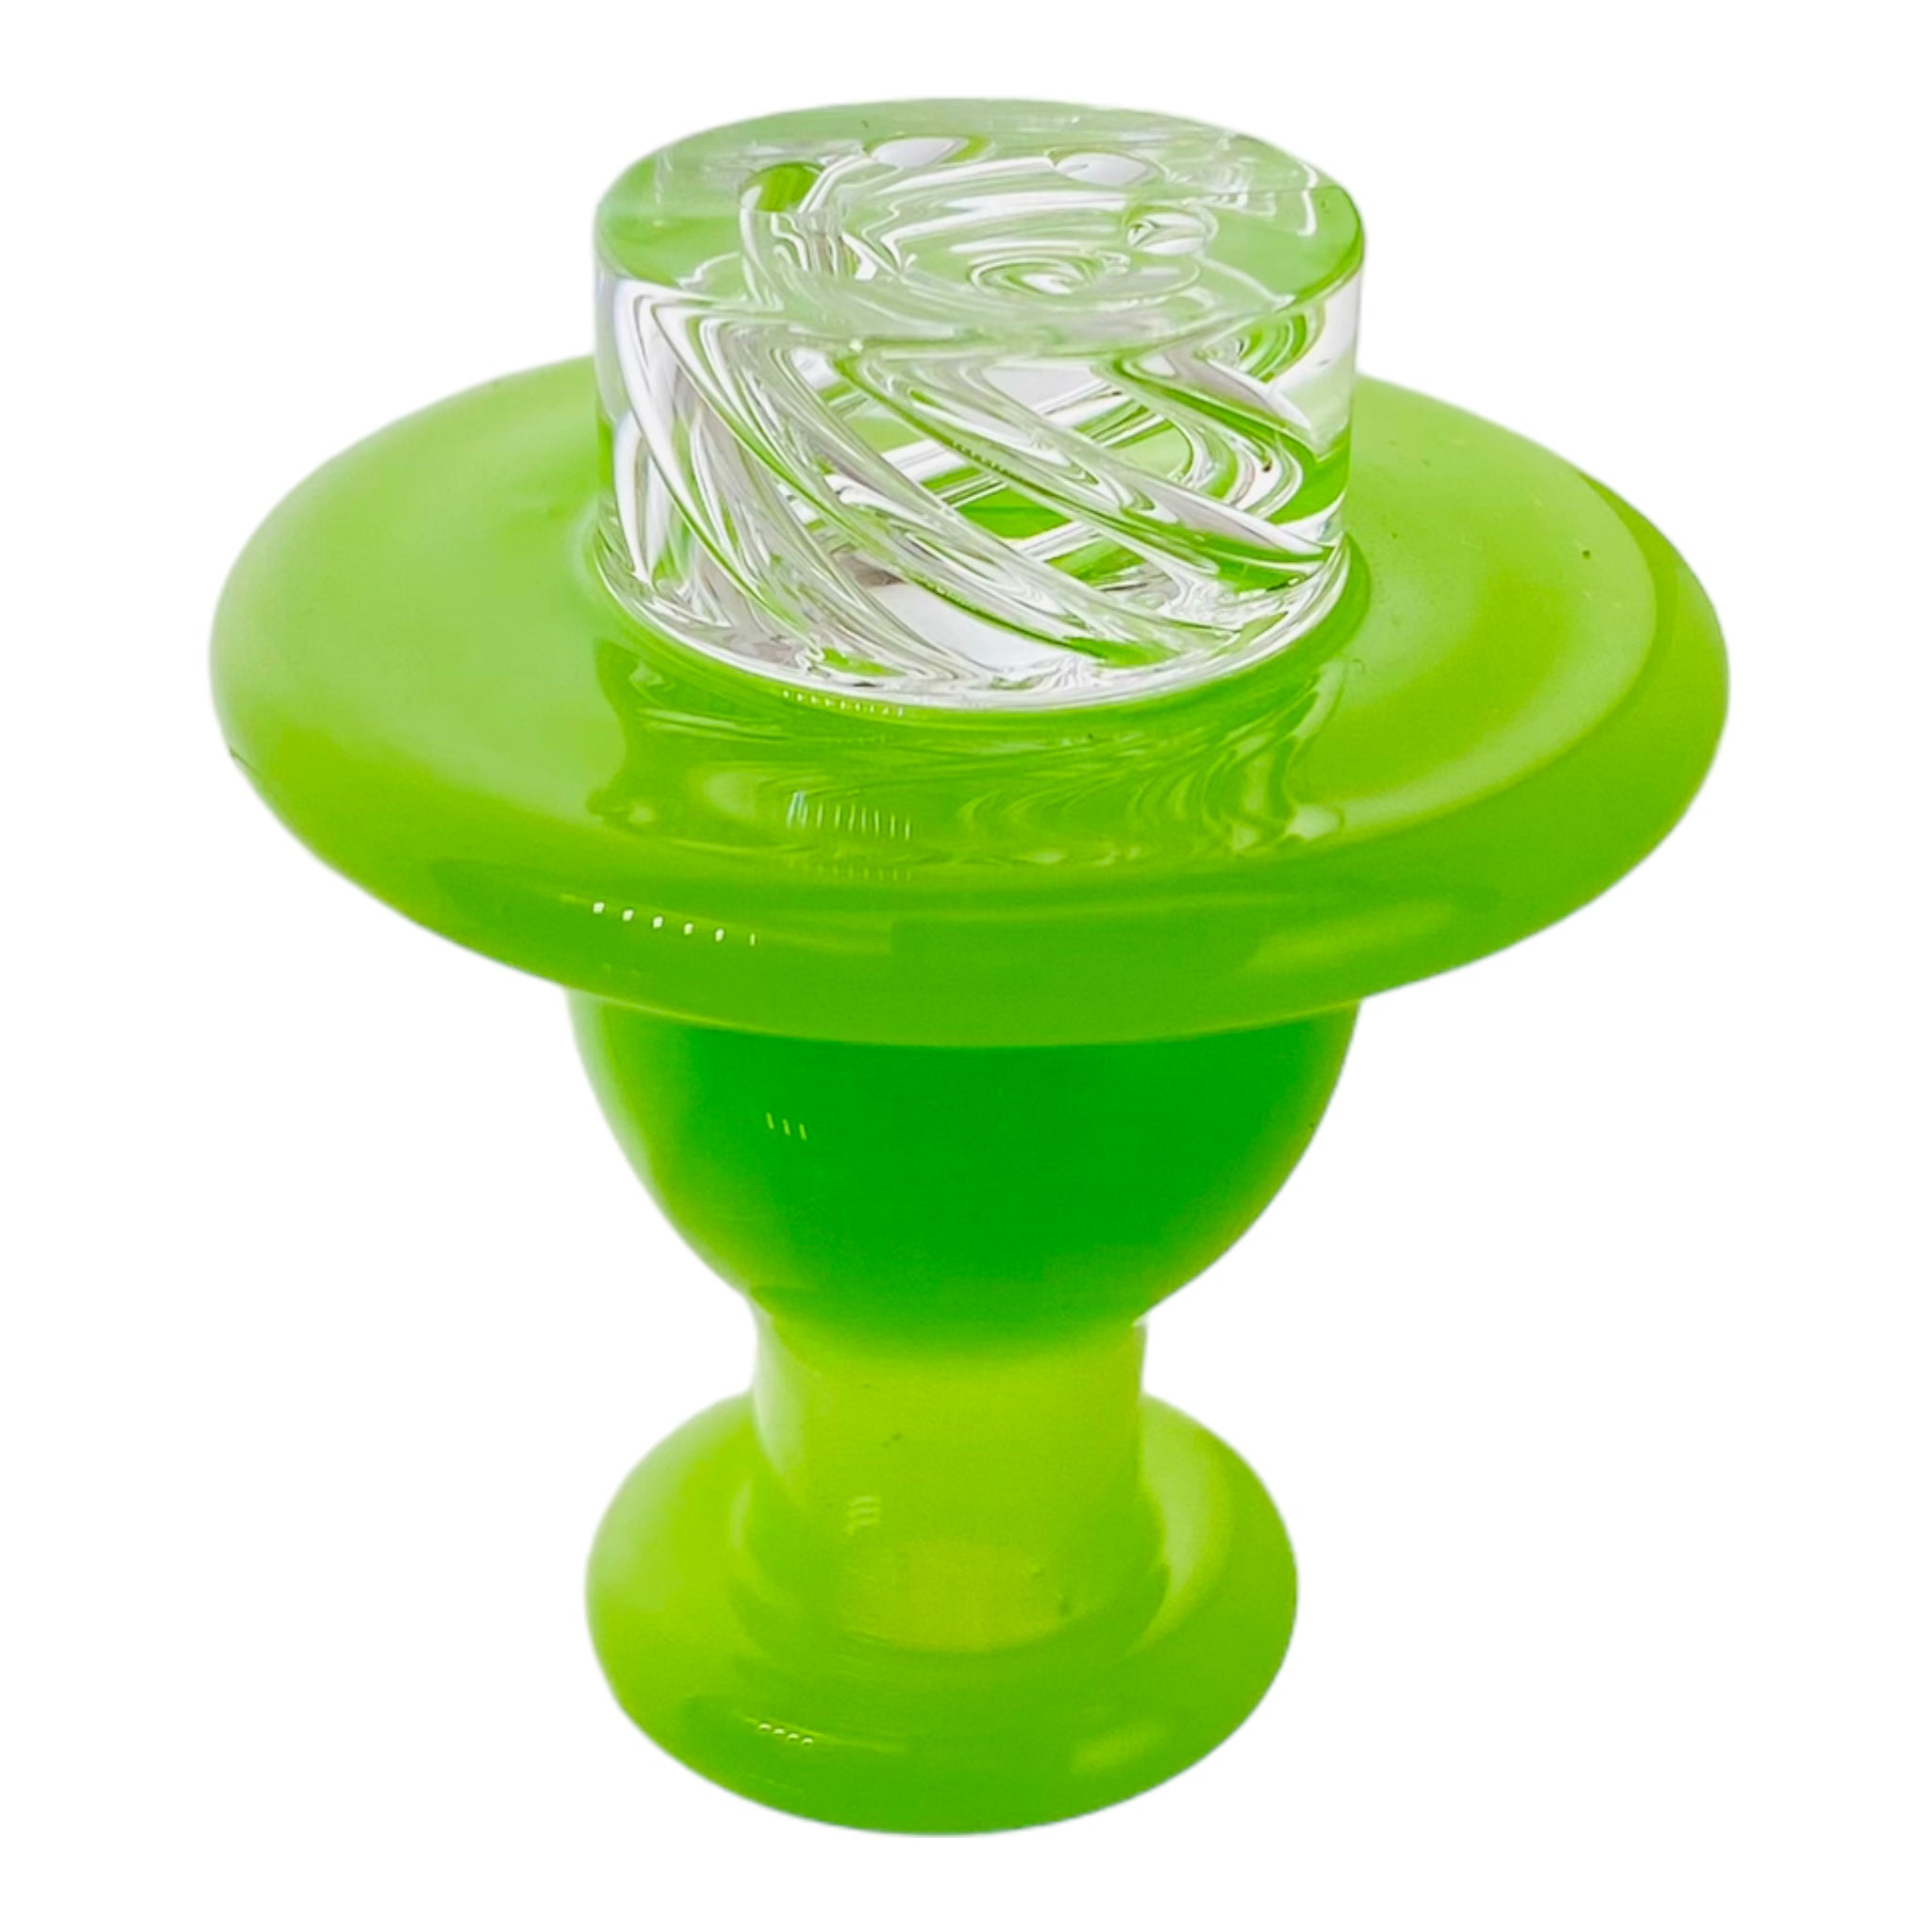 Gordo Scientific - Spinner Carb Cap Slime Green OG Riptide